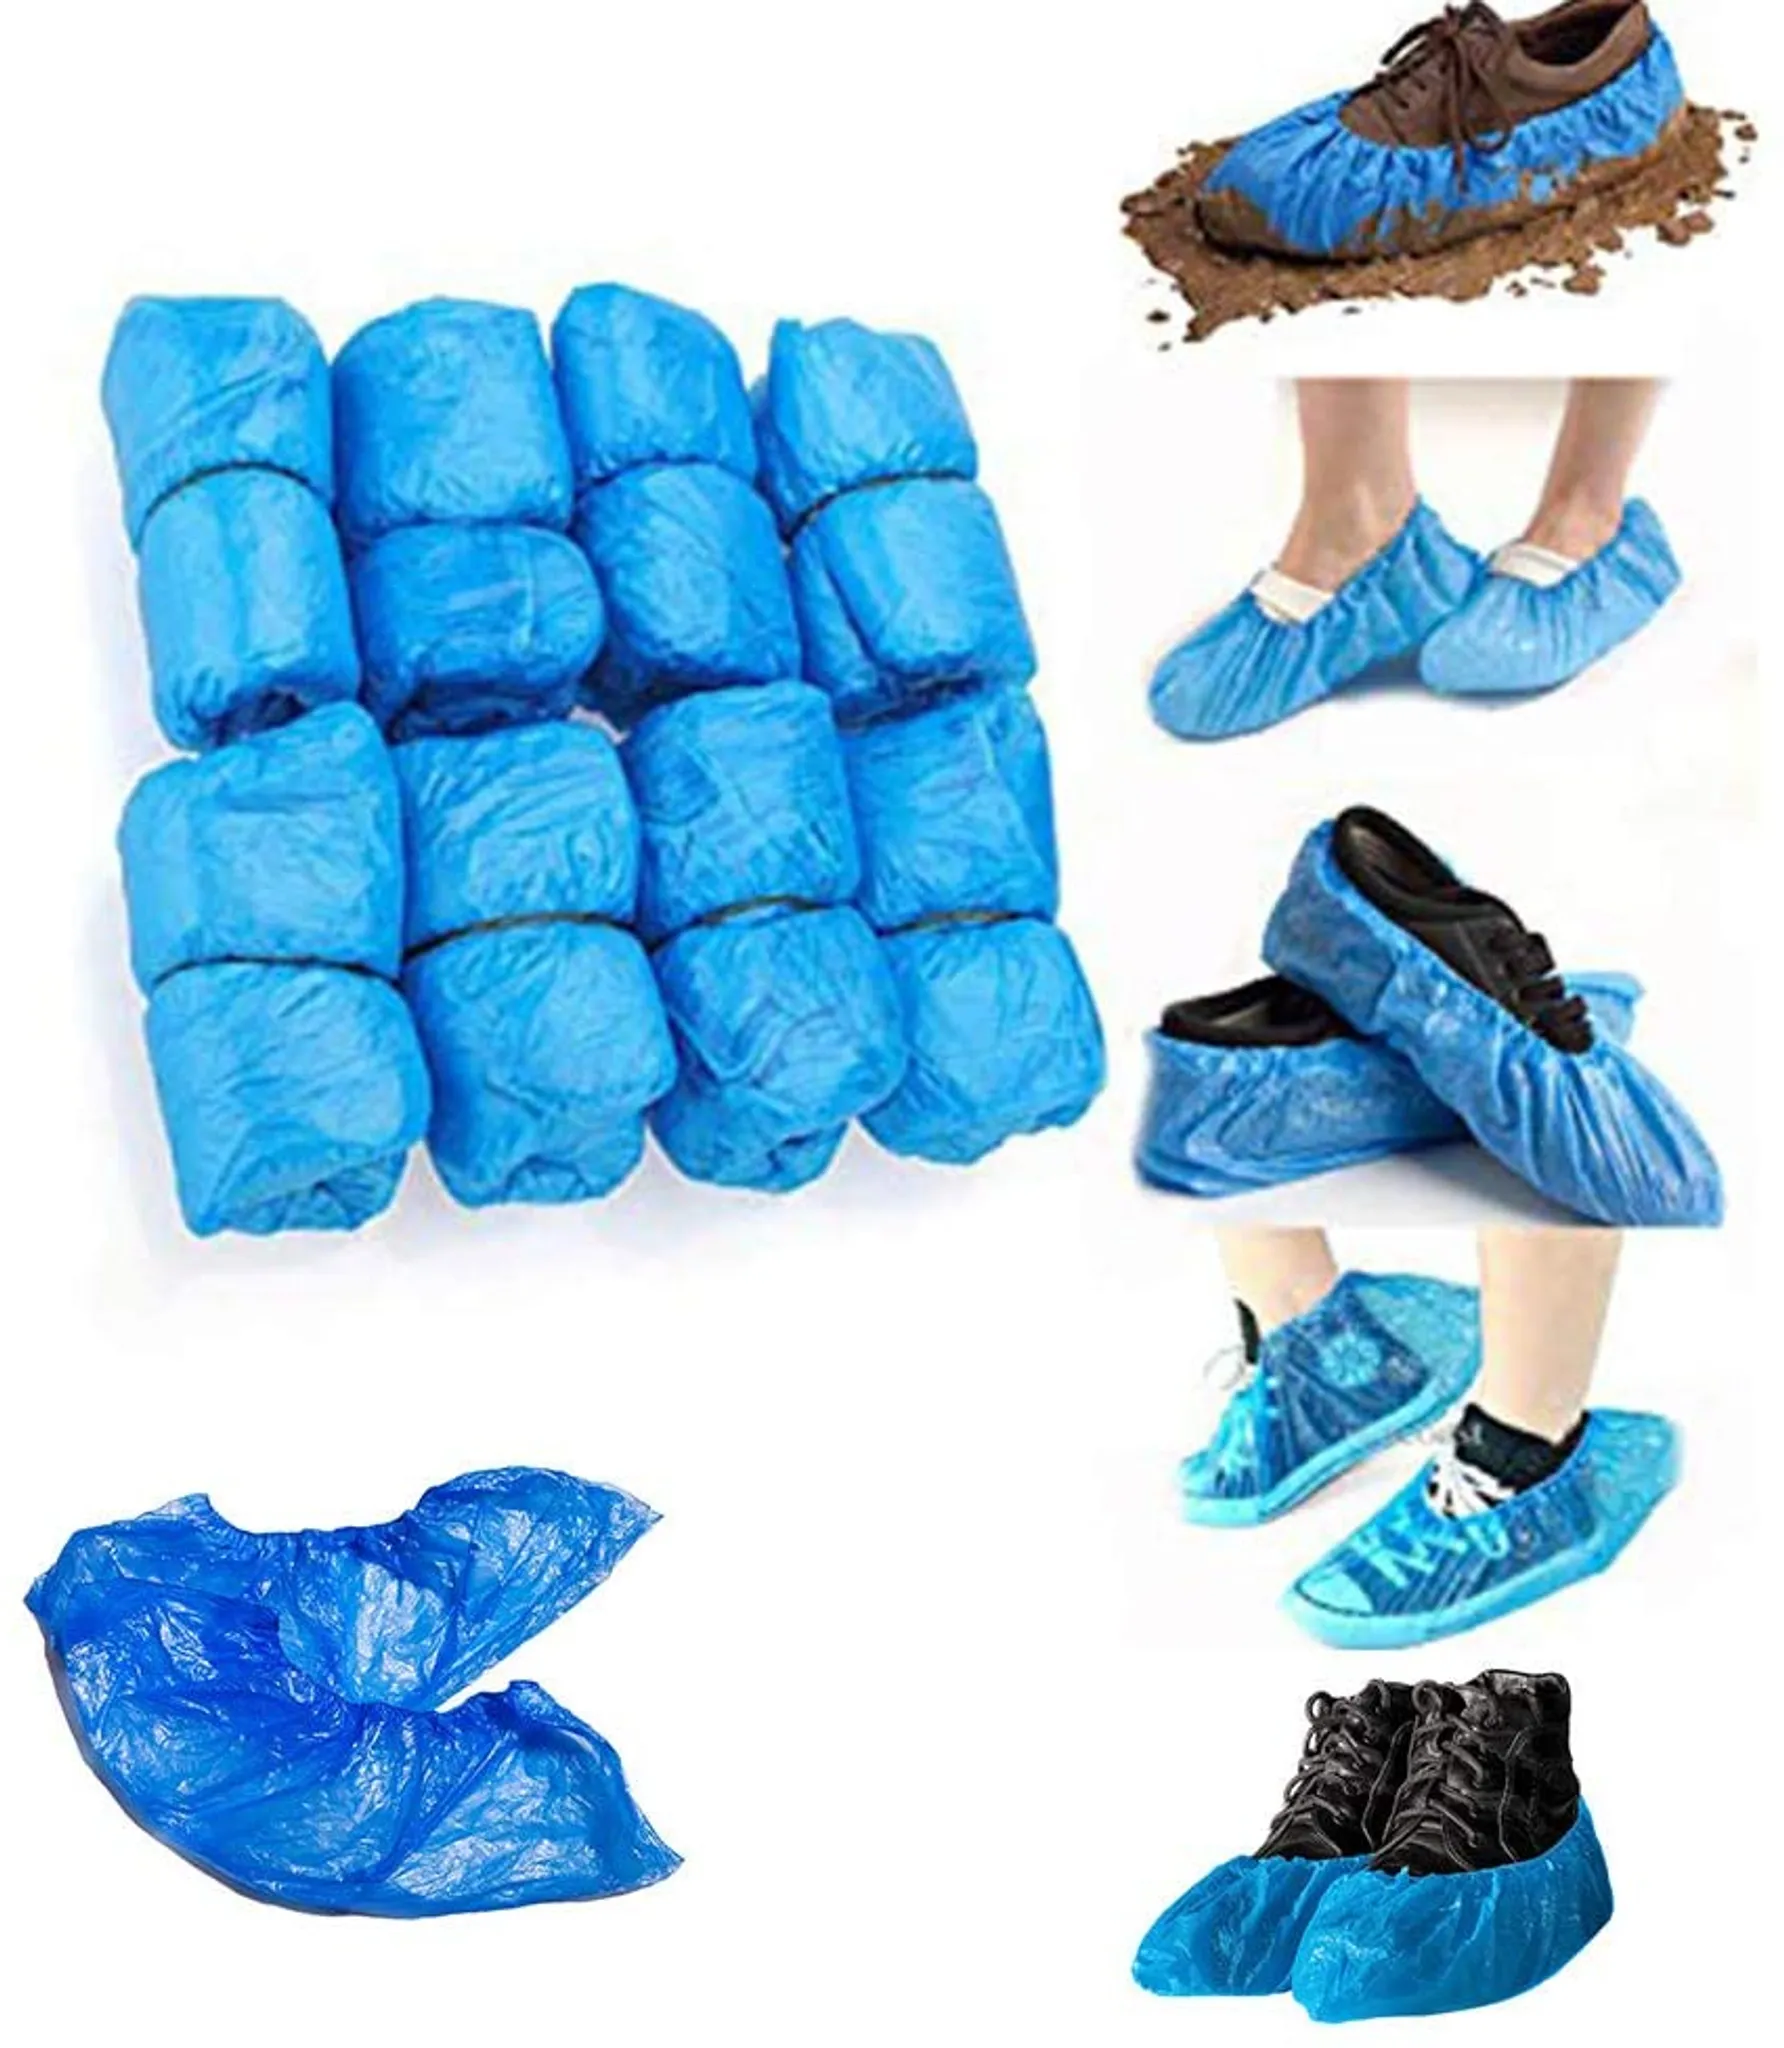 Farbige-Überschuhe, CPE Einwegüberschuh, Einweg-Überziehschuhe,  Op-Schuhüberzieher, Galosche, wasserdicht, Farbe:blau - 100 Stück,  Größe:extra stark 